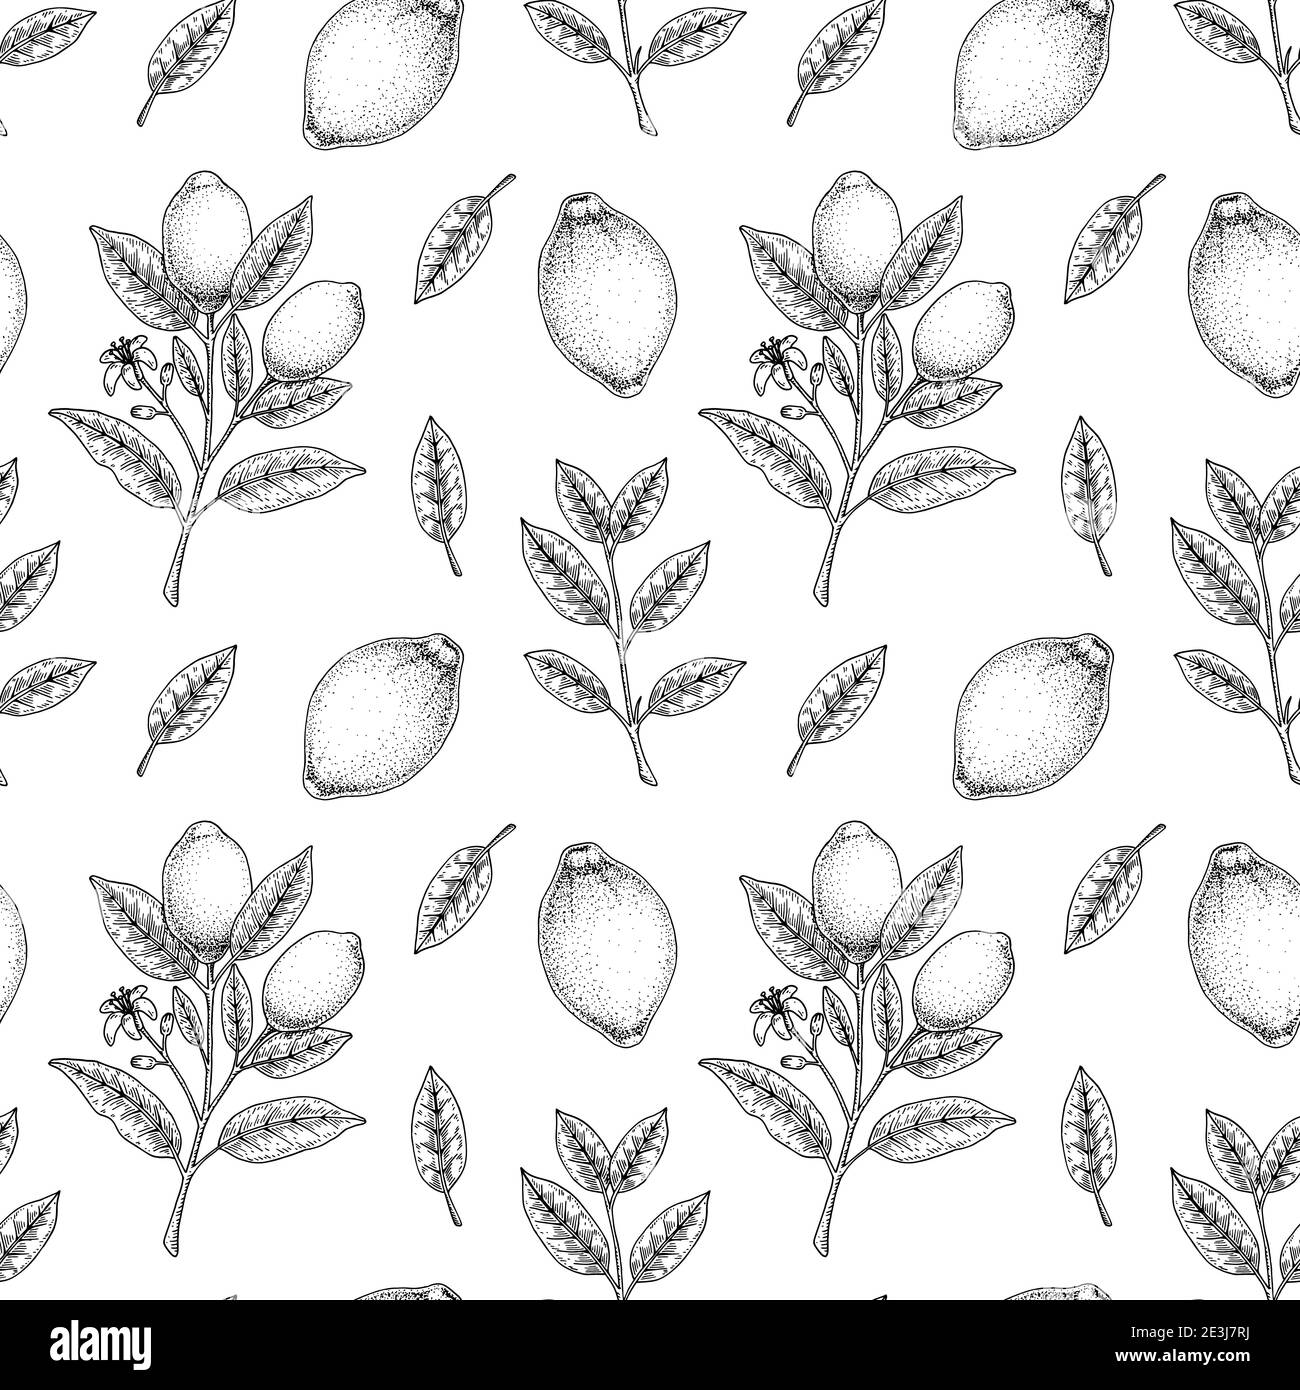 Handgezeichnetes nahtloses Muster mit Zitronenfrüchten, Blättern und Zweigen mit Blumen. Vektorgrafik im Skizzenstil Stock Vektor